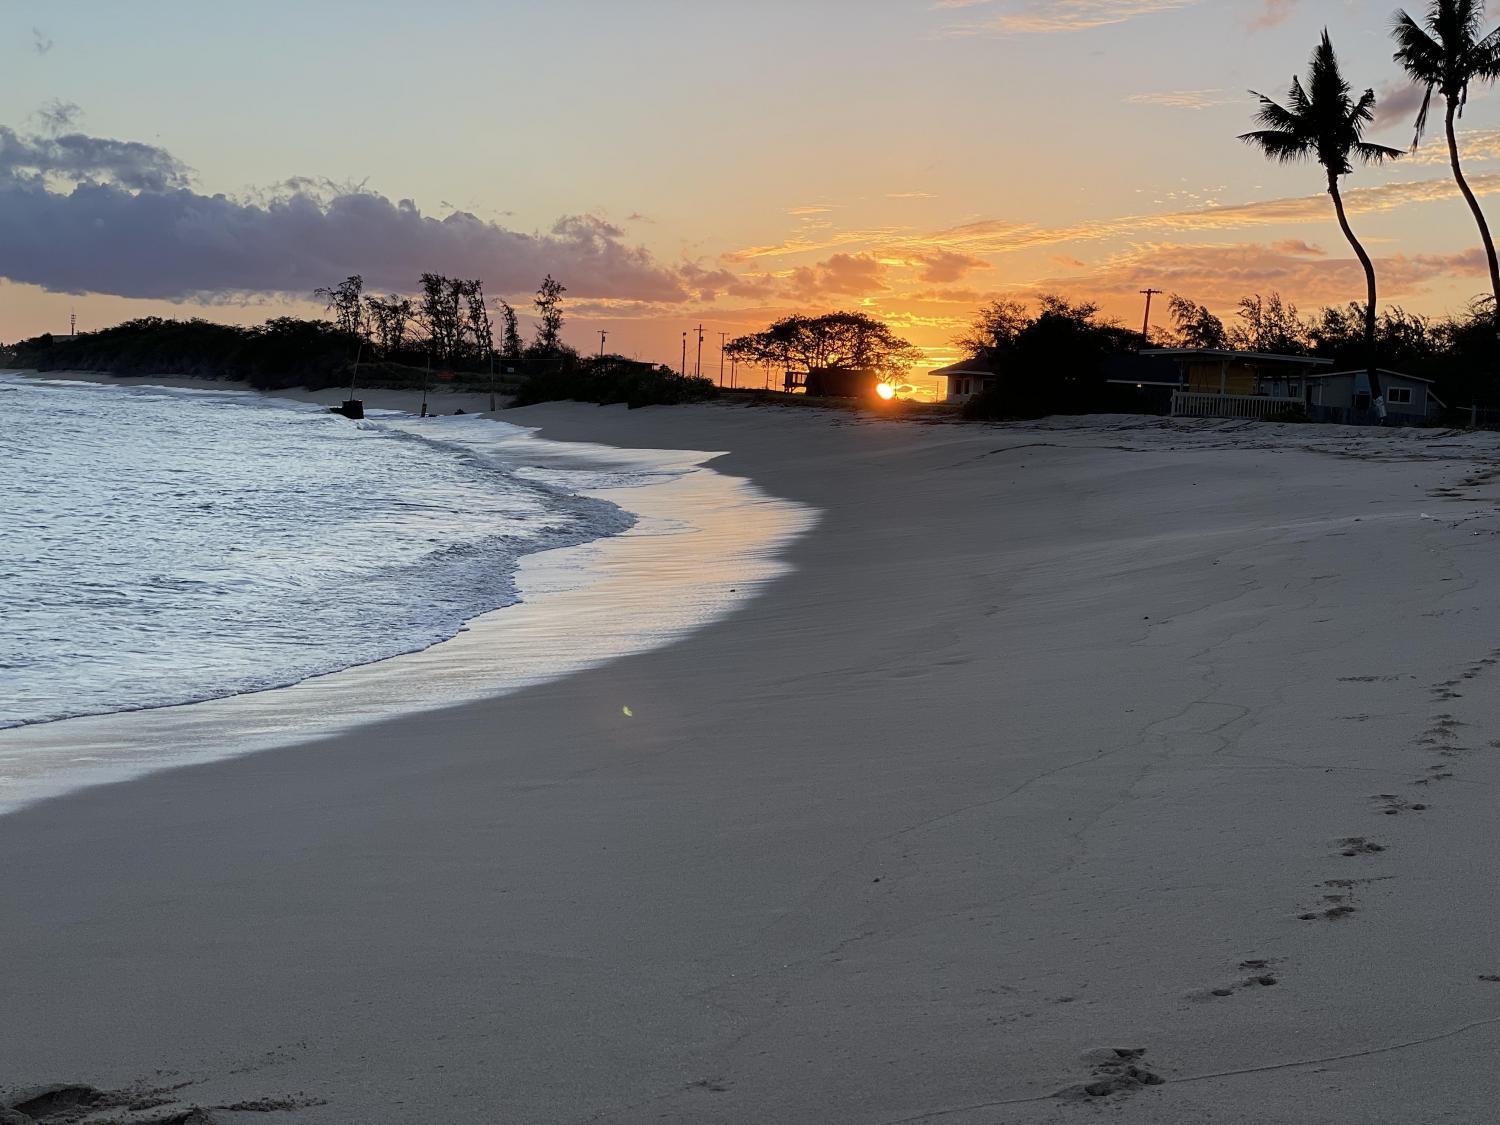 Private Beach Cabana Experience on Secluded Sandy Beach
Sun Nov 6, 9:00 AM - Sun Nov 6, 7:00 PM
in 2 days